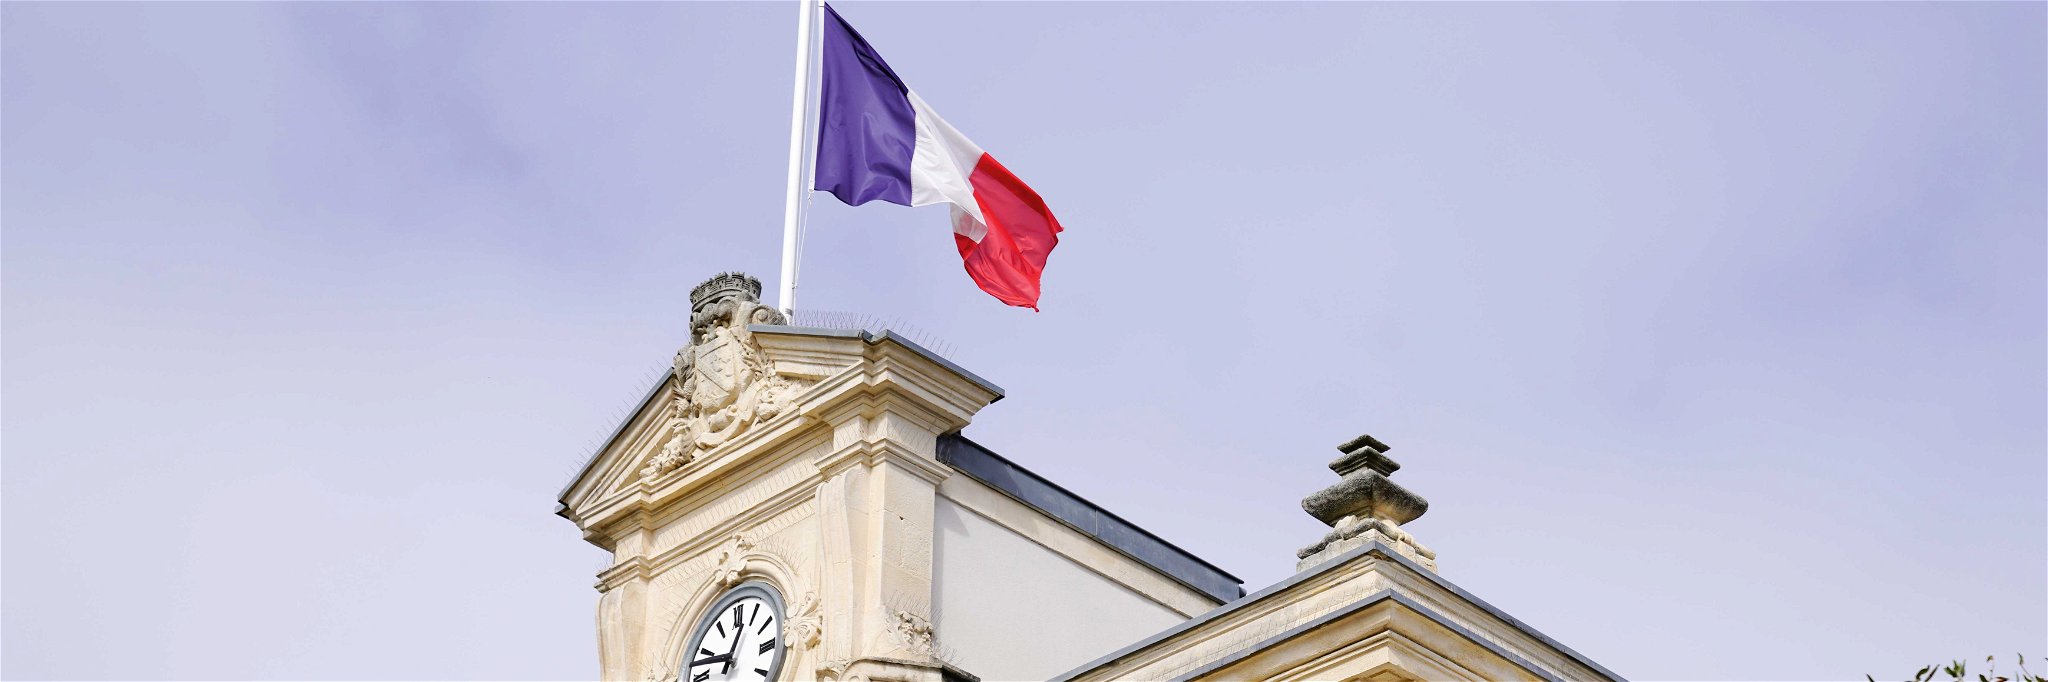 Die Ergbnisse der Präsidentschaftswahlen in Frankreich lassen einige Fragen offen.&nbsp;